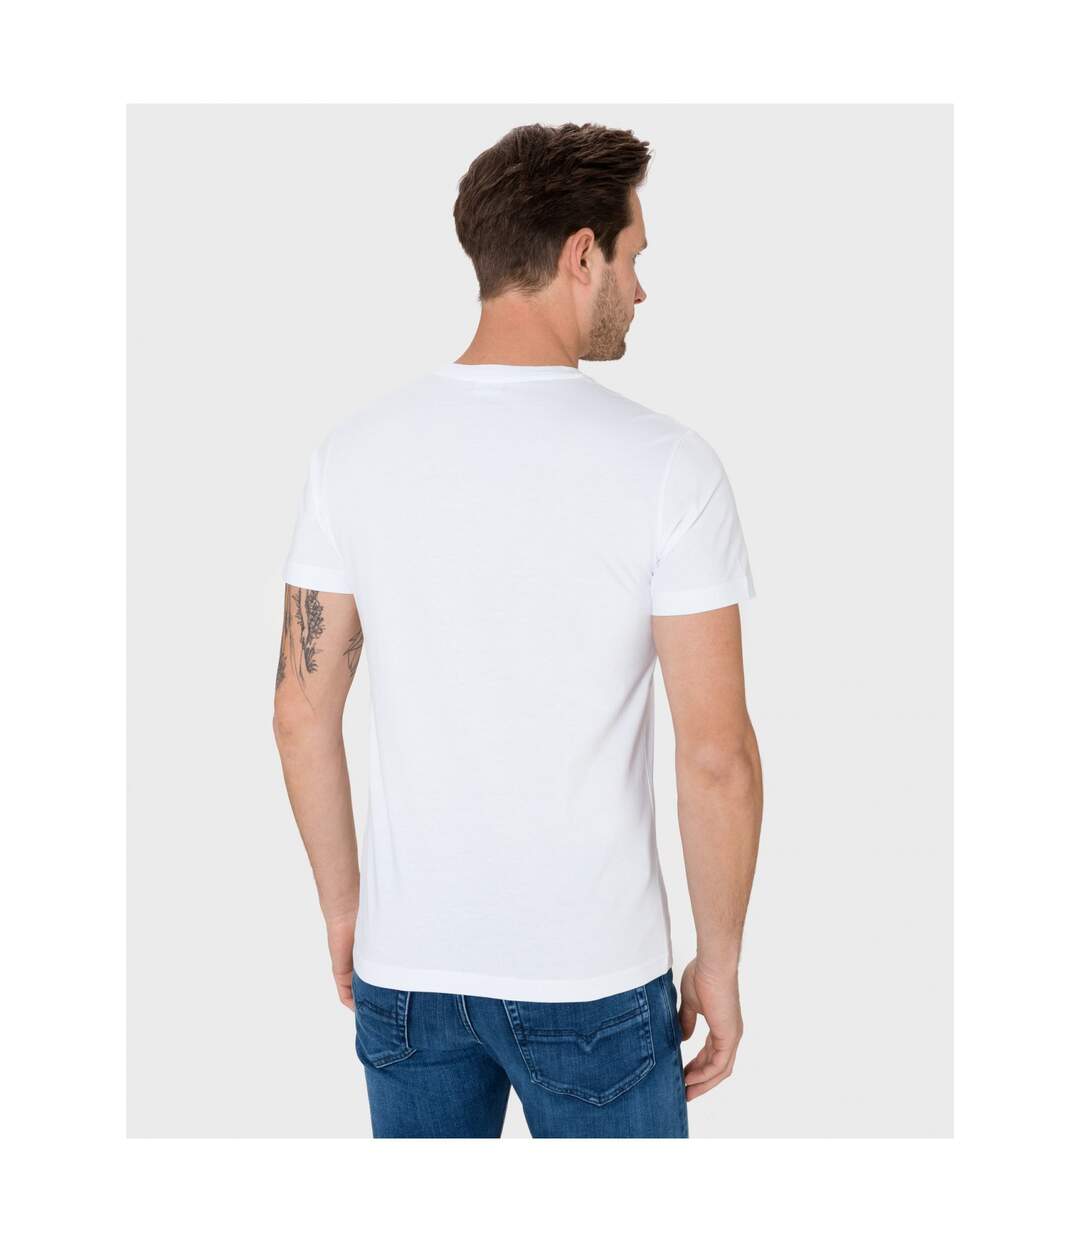 Tee shirt en coton à logo imprimé  -  Diesel - Homme